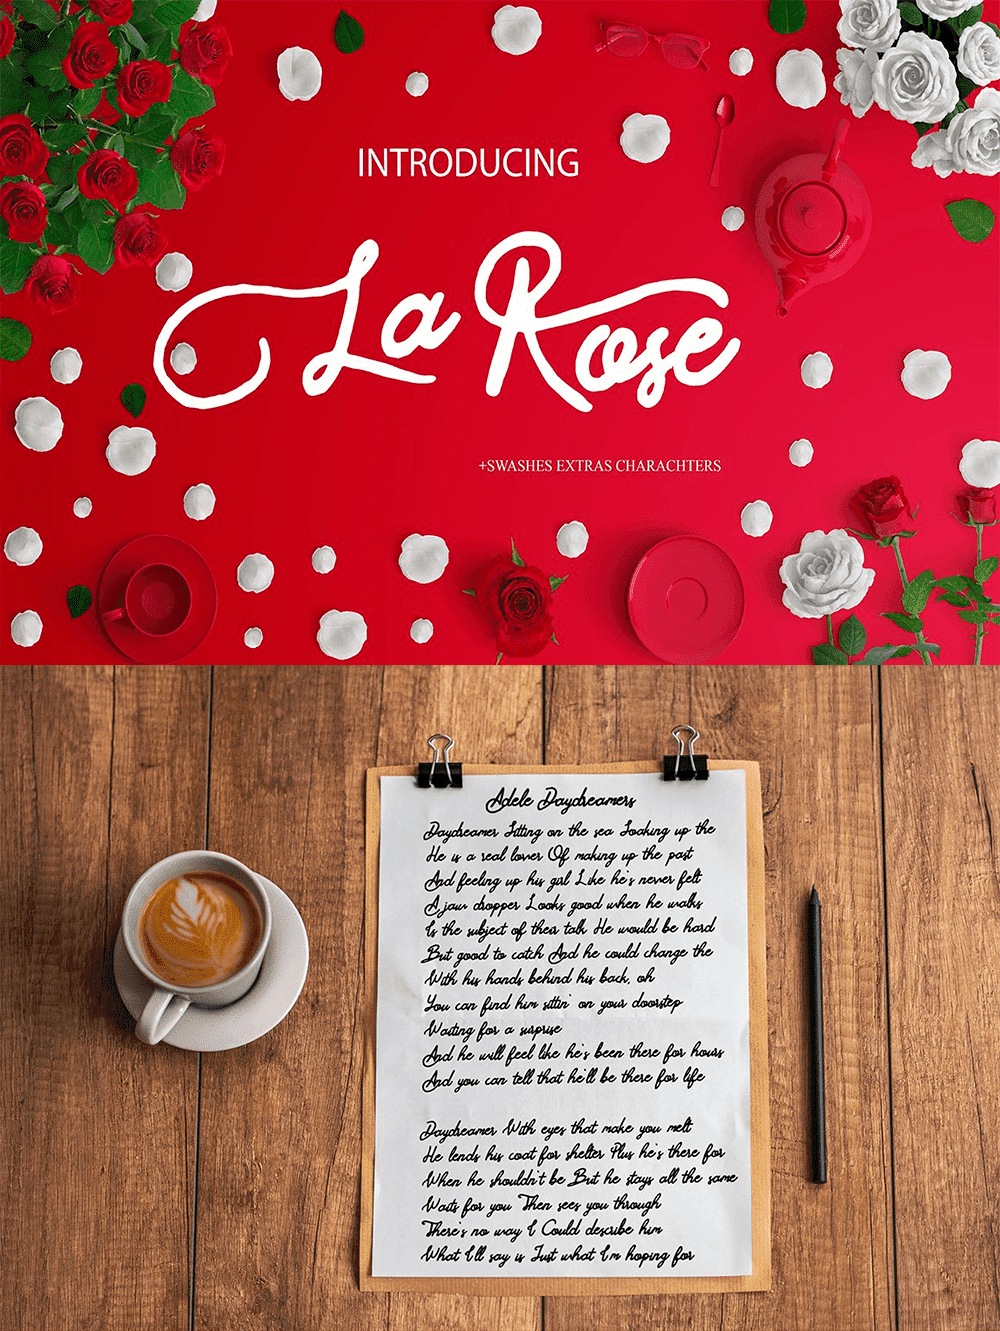 La Rose, image for pinterest.